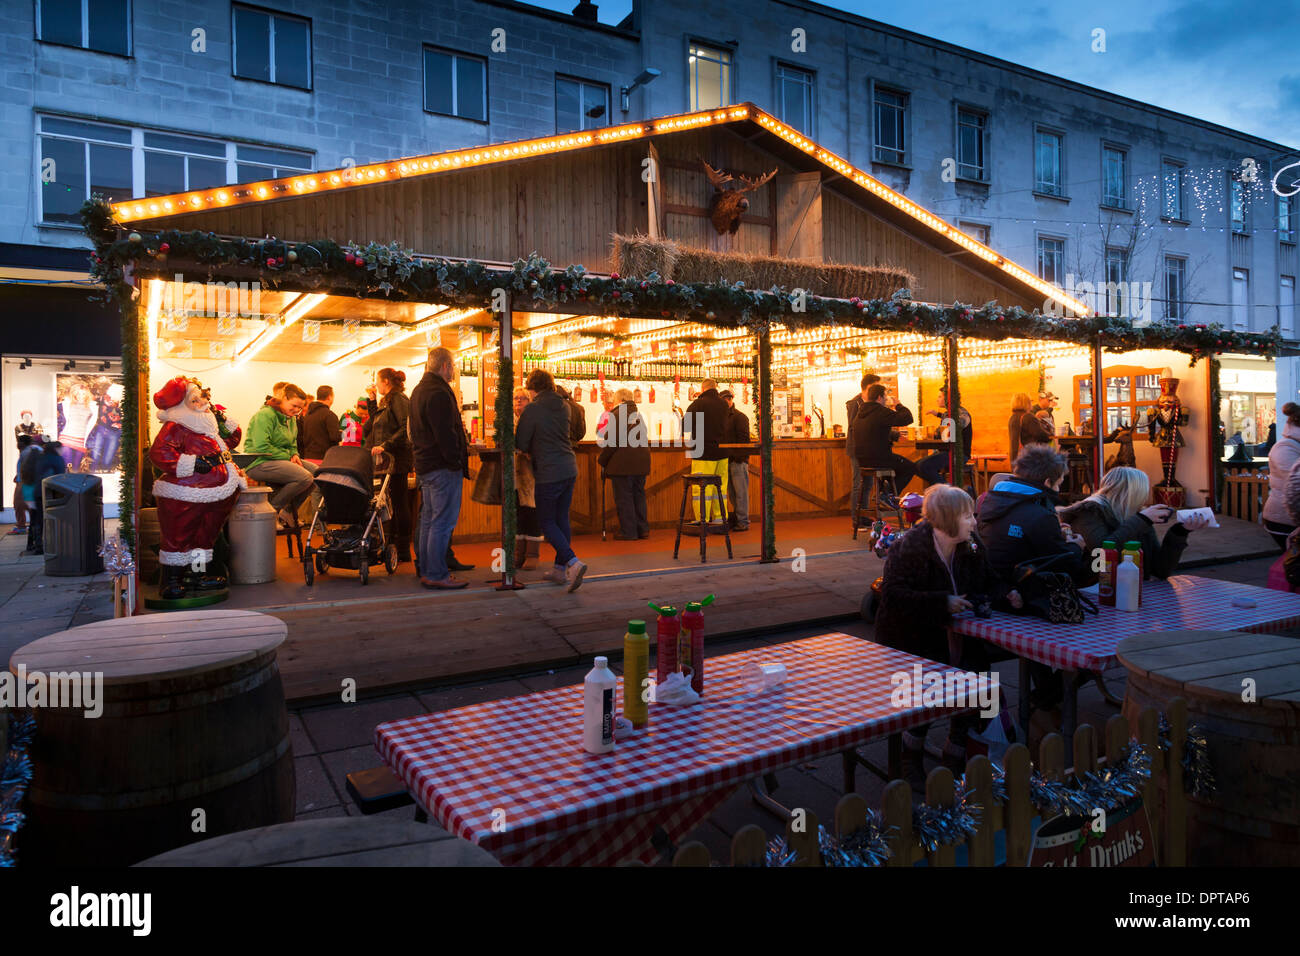 Bier-Chalet im traditionellen Weihnachtsmarkt Straße. Stockfoto